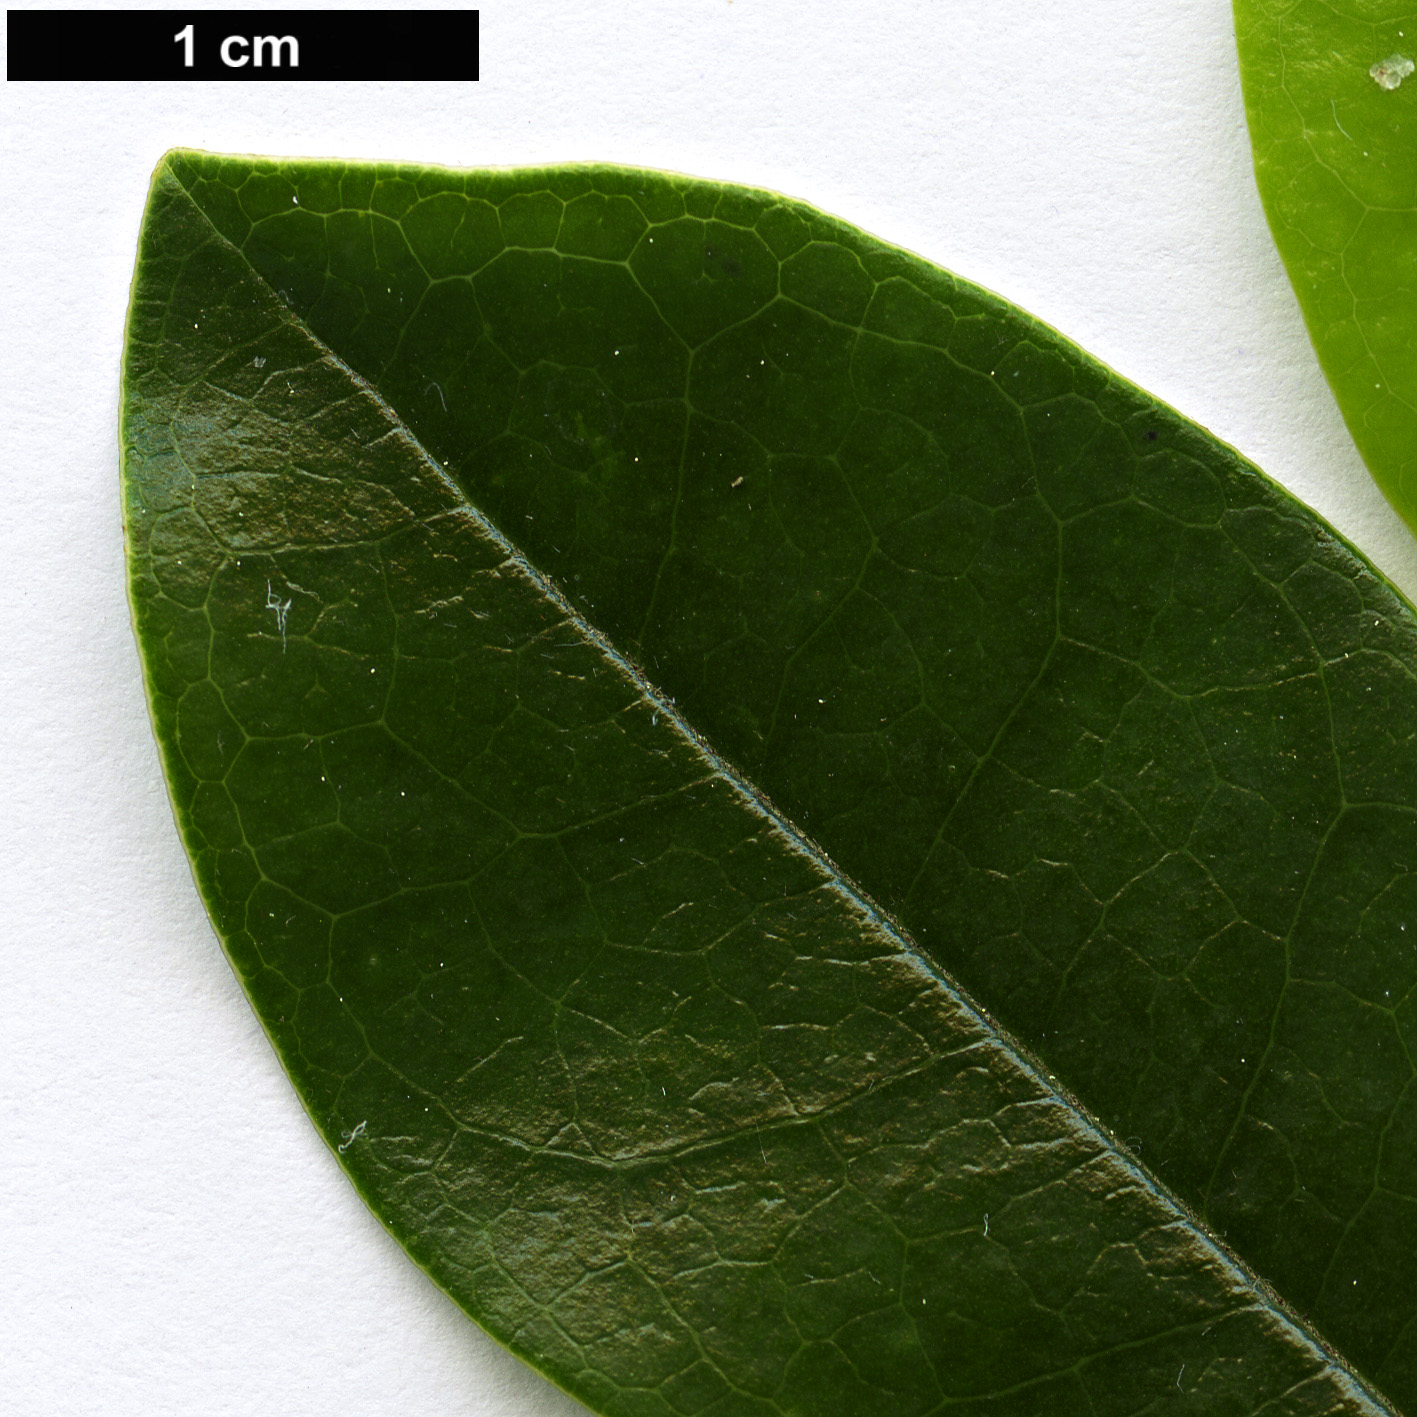 High resolution image: Family: Magnoliaceae - Genus: Magnolia - Taxon: amabilis